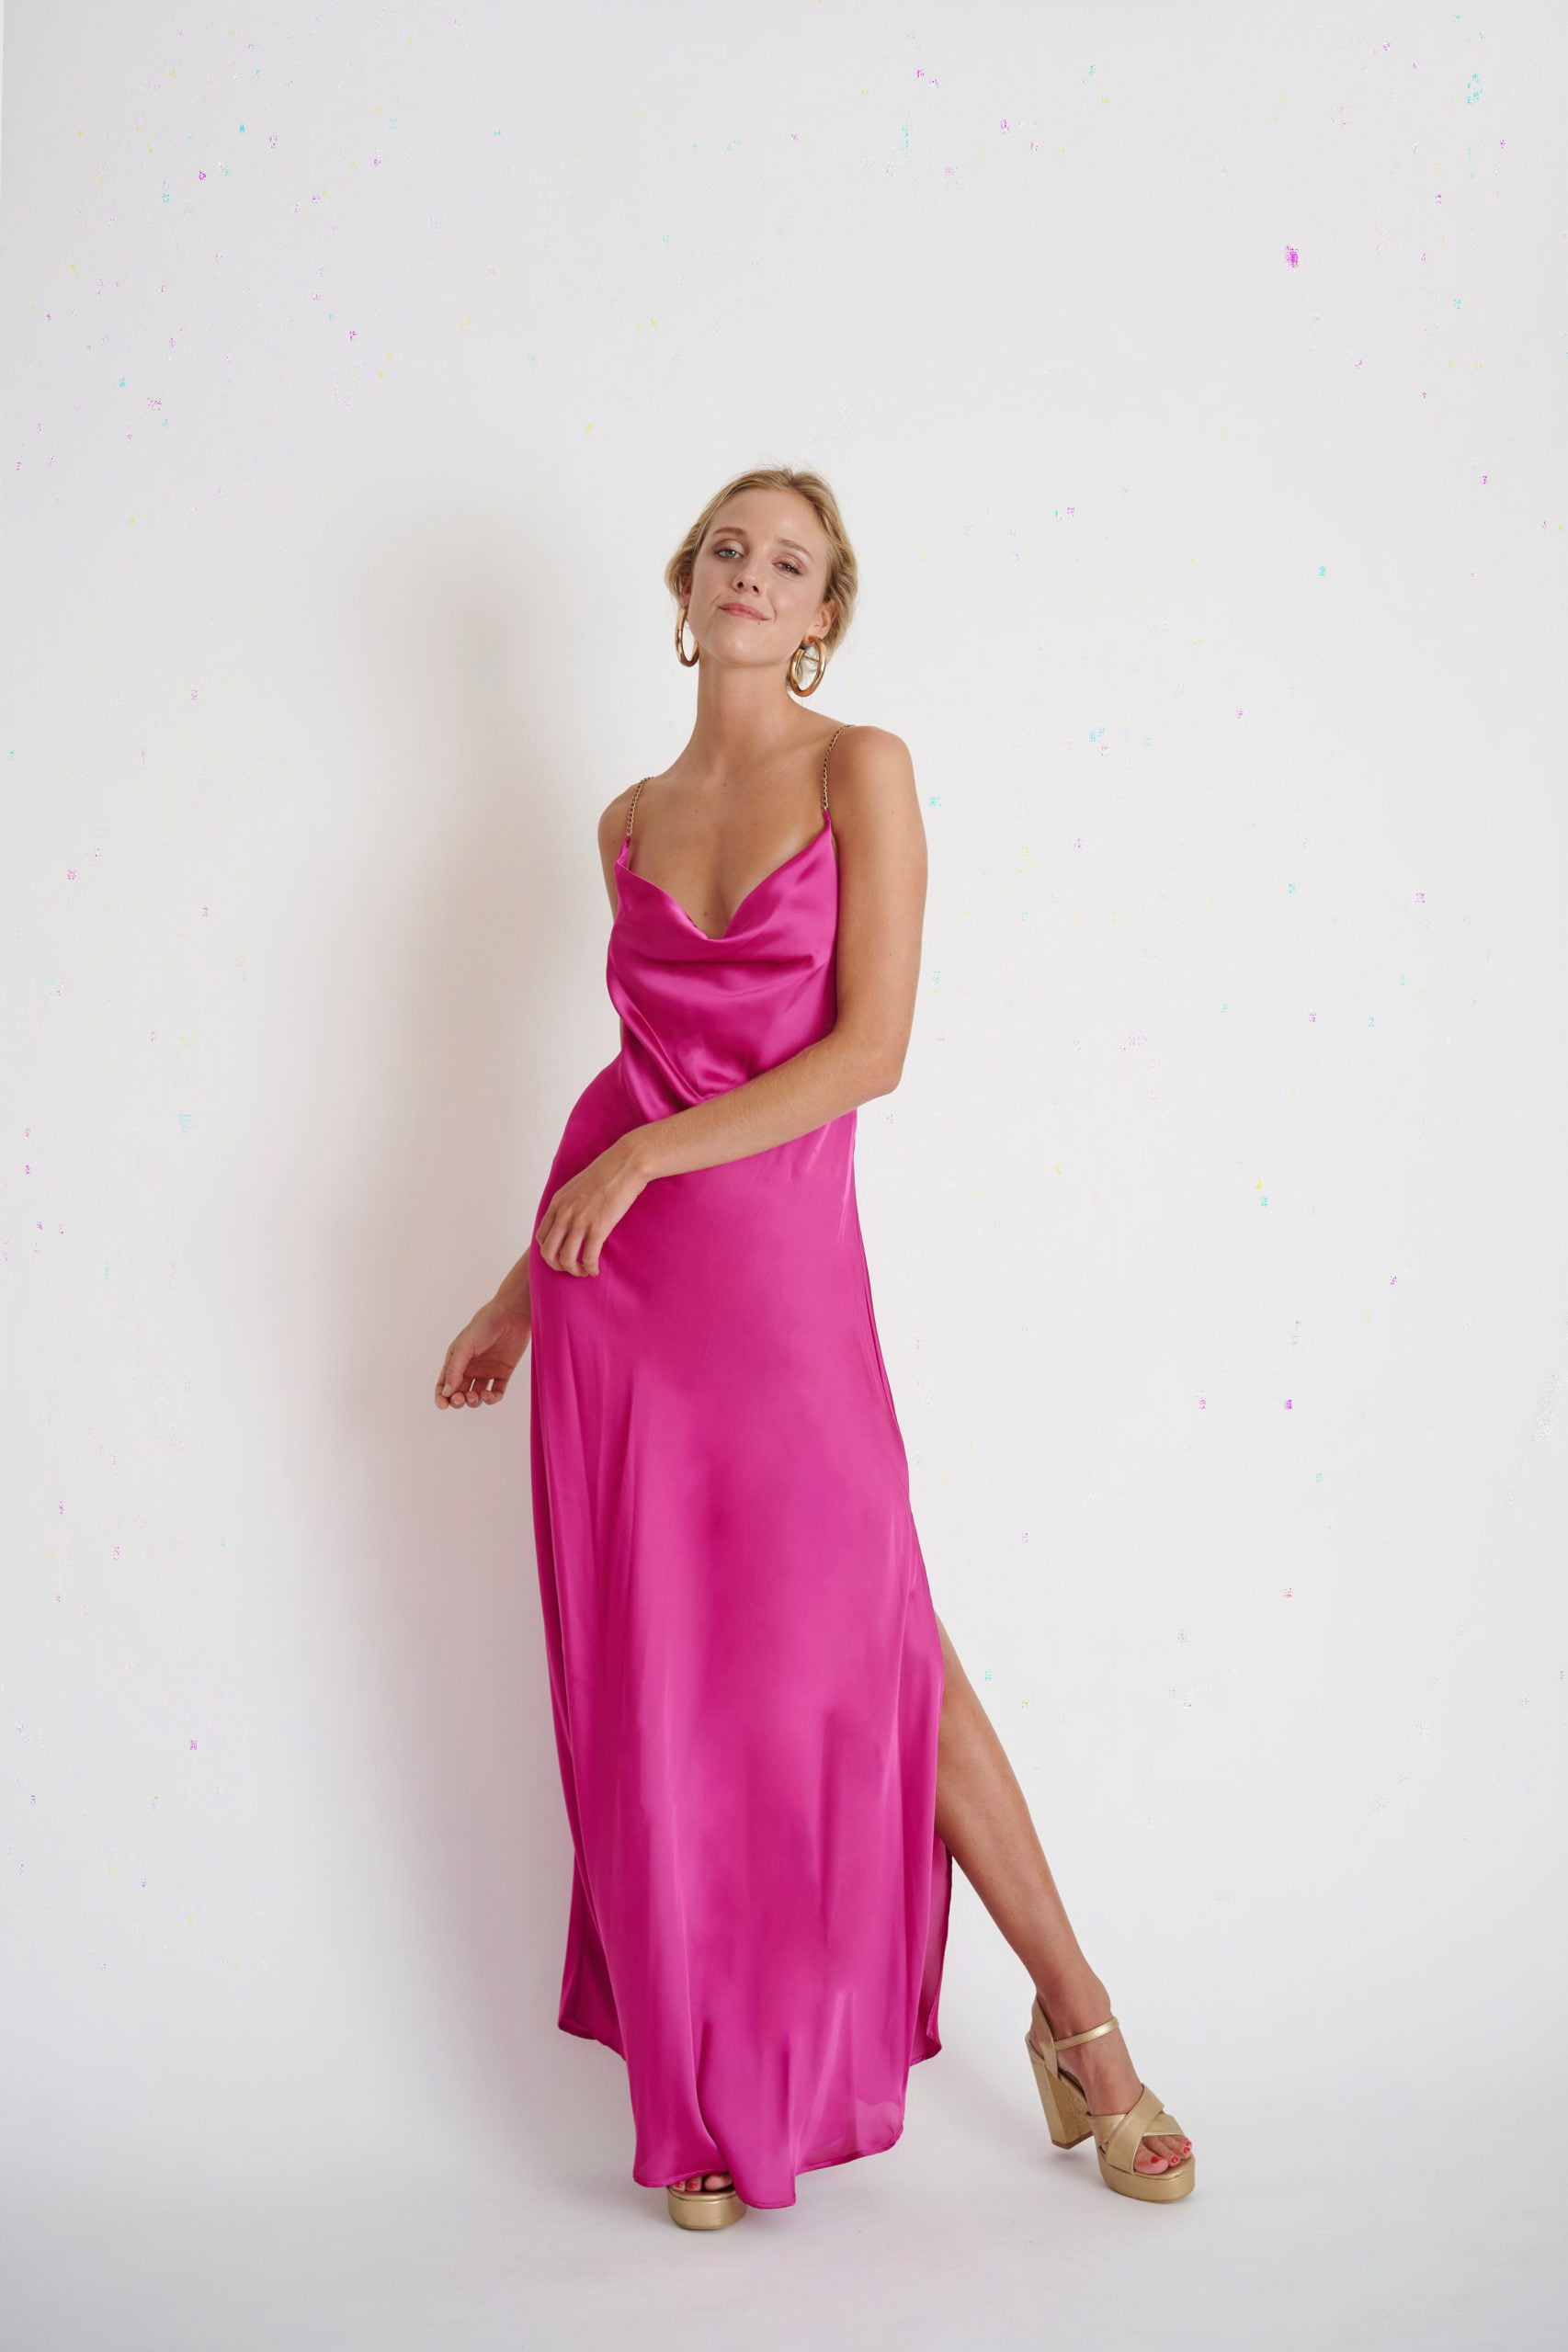 Si buscas vestidos elegantes Este vestido fucsia cherry Helena lux es tu elección para un look soñado para fiestas elegantes y ocasiones especiales. Amámos cada detalle.